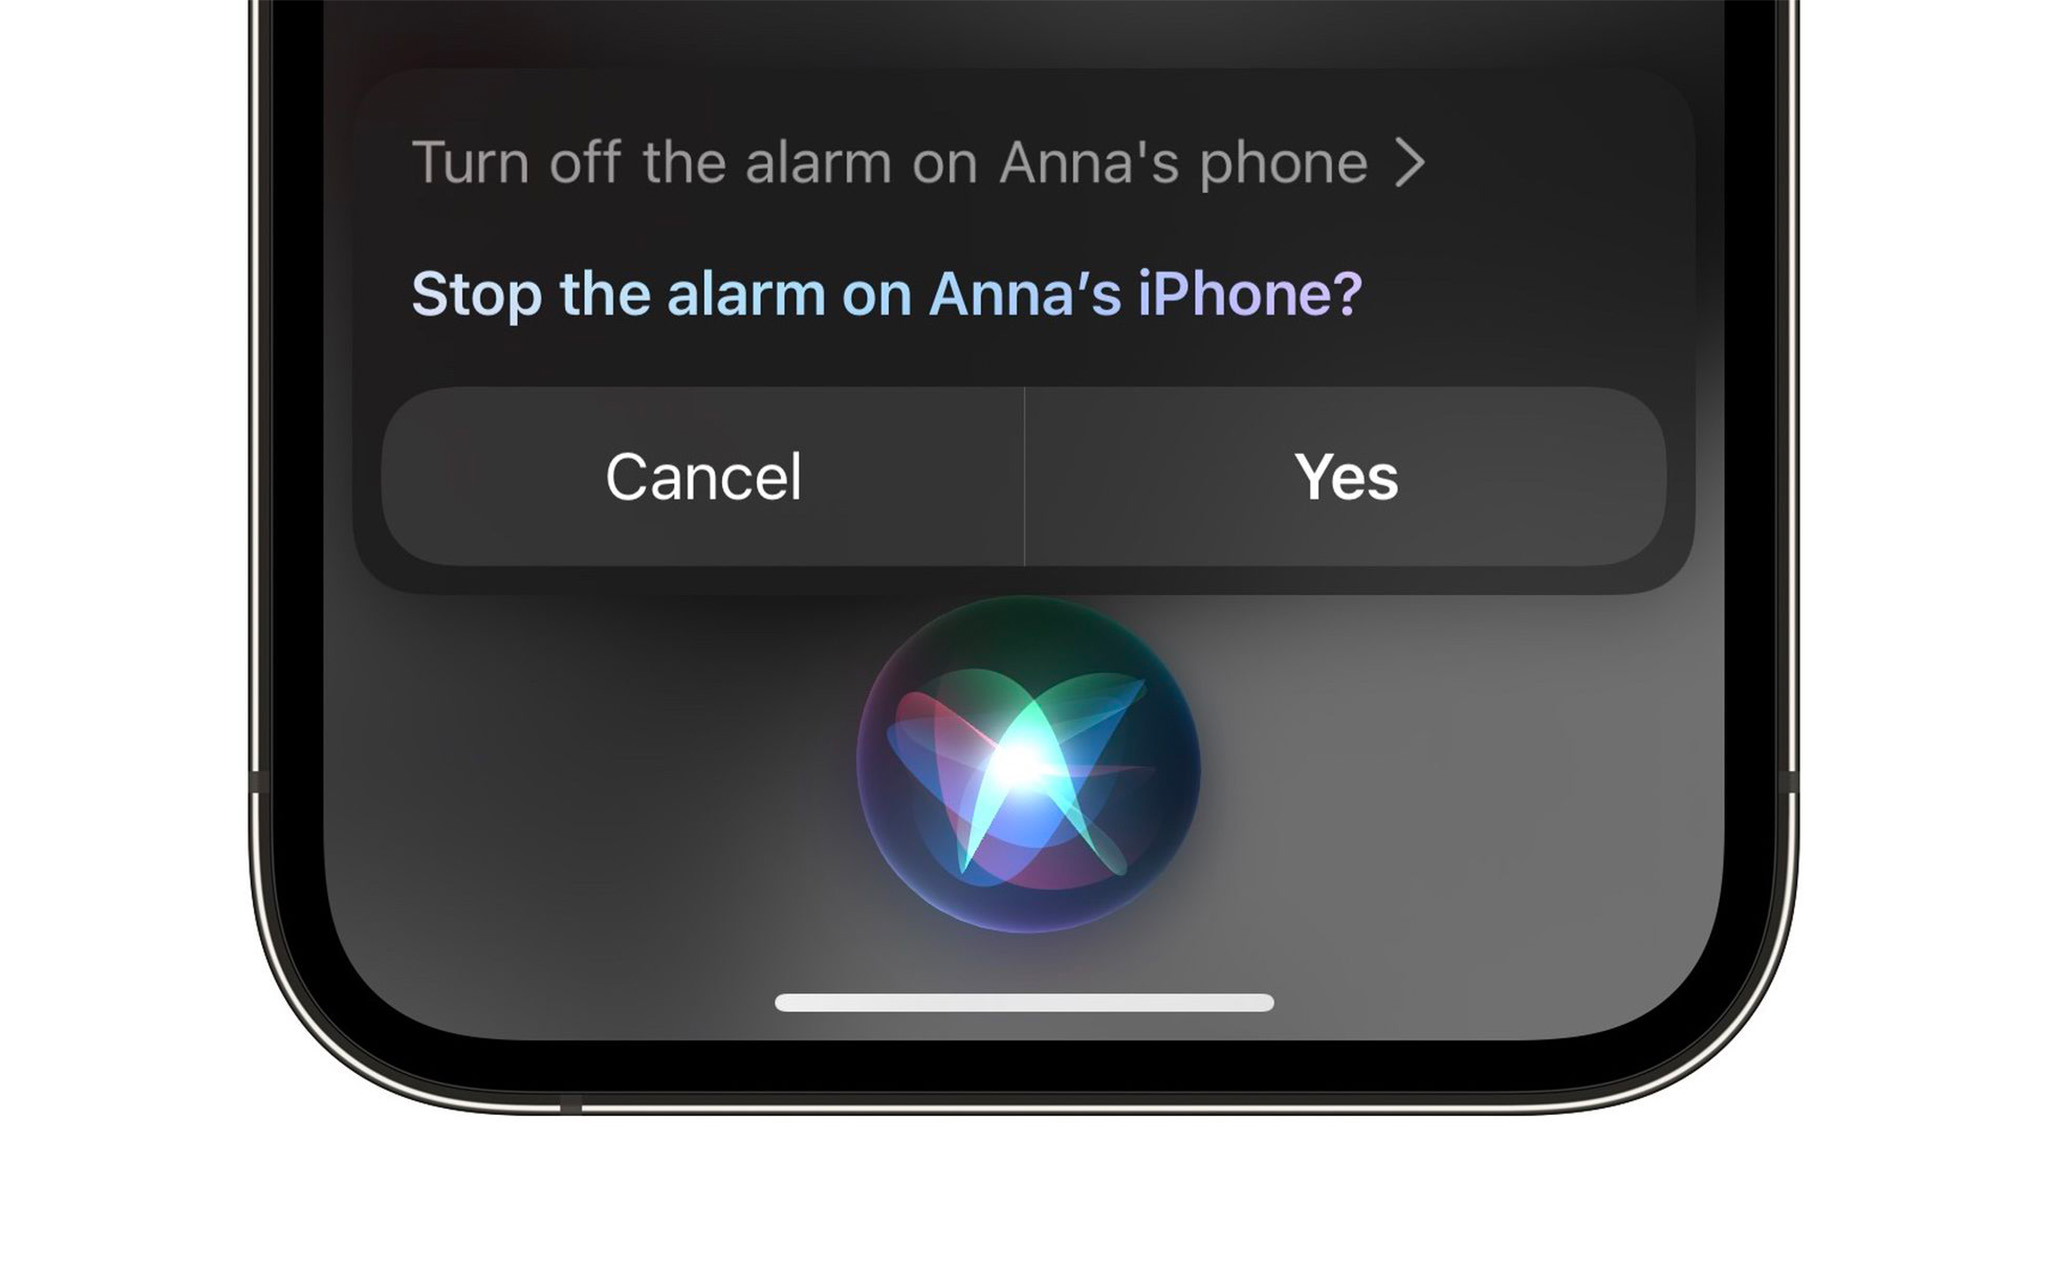 Bạn cũng có thể tắt báo thức trên iPhone của người khác thông qua Siri